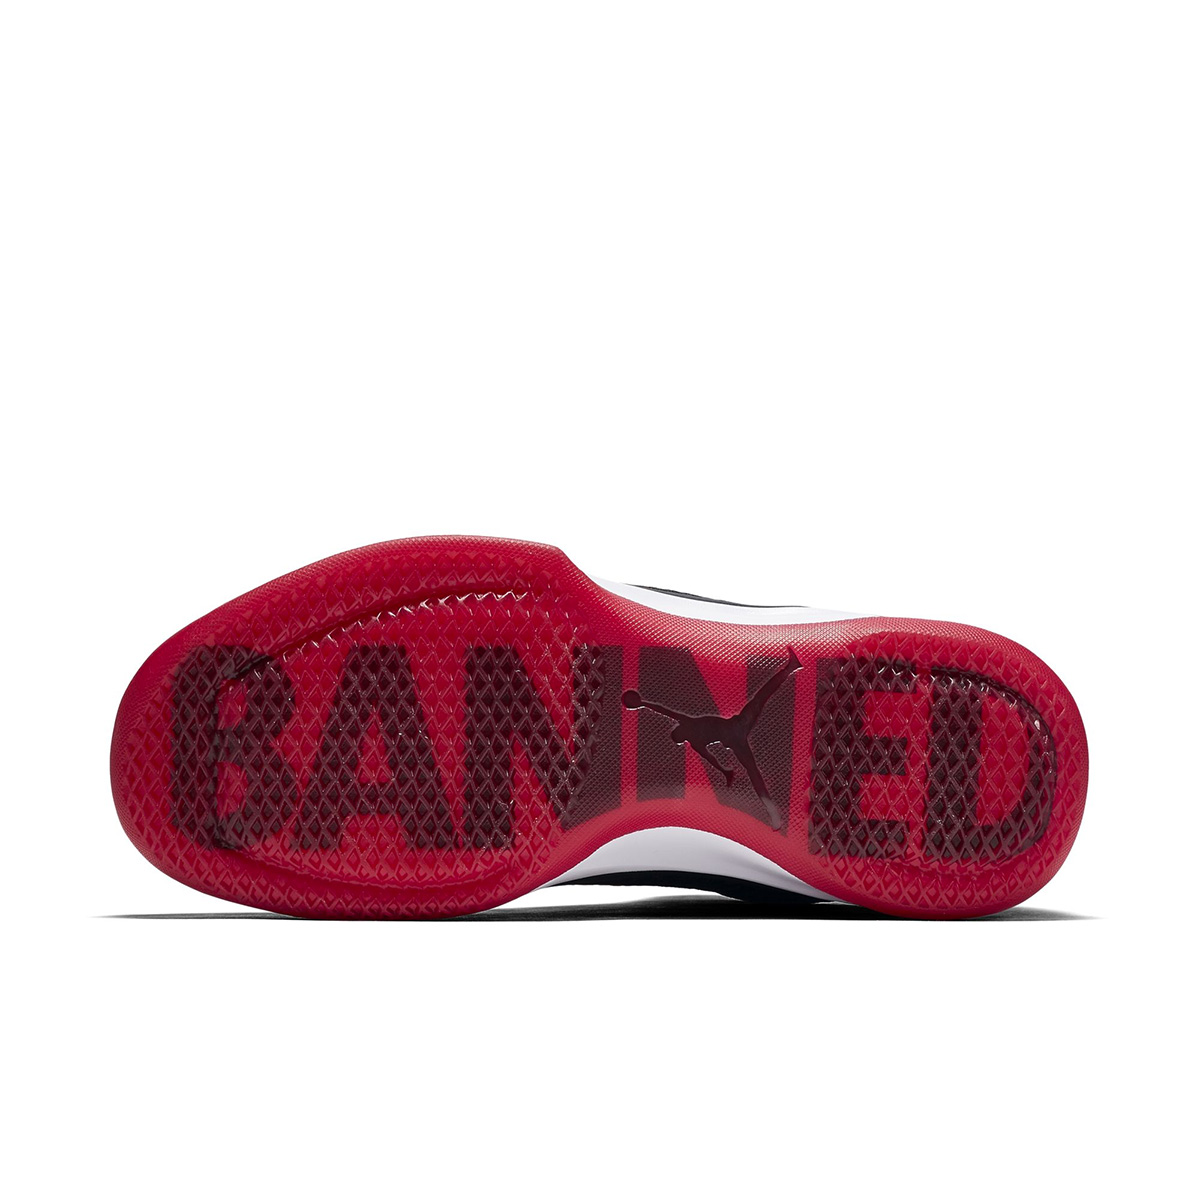 即将,发售,黑红,Air,Jordan,XXXI,“,Ban 845037-001AJ31 即将发售！黑红 Air Jordan XXXI “Banned” 完整官图释出